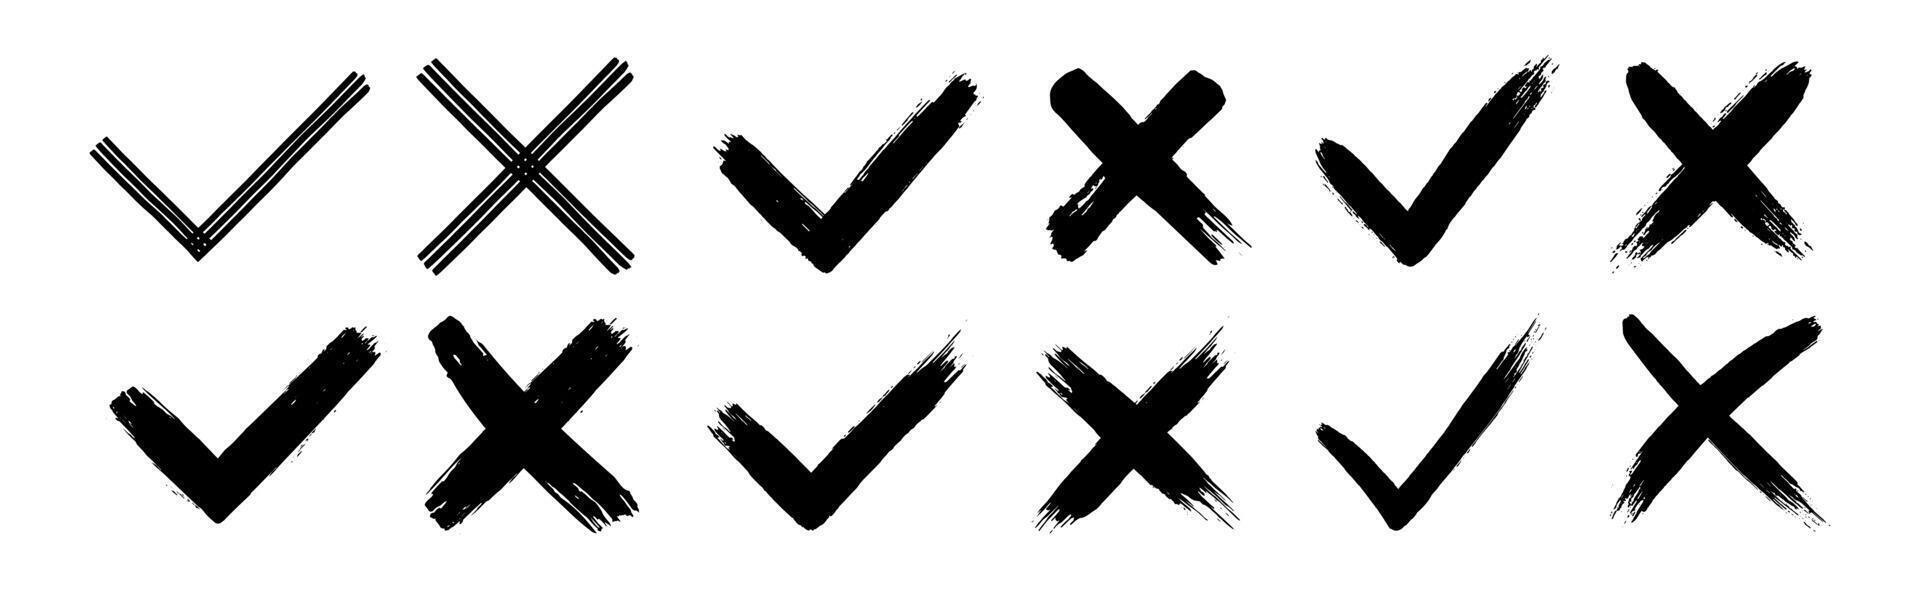 vuil grunge hand- getrokken met borstel beroertes kruis X en Kruis aan OK controleren merken v vector illustratie reeks